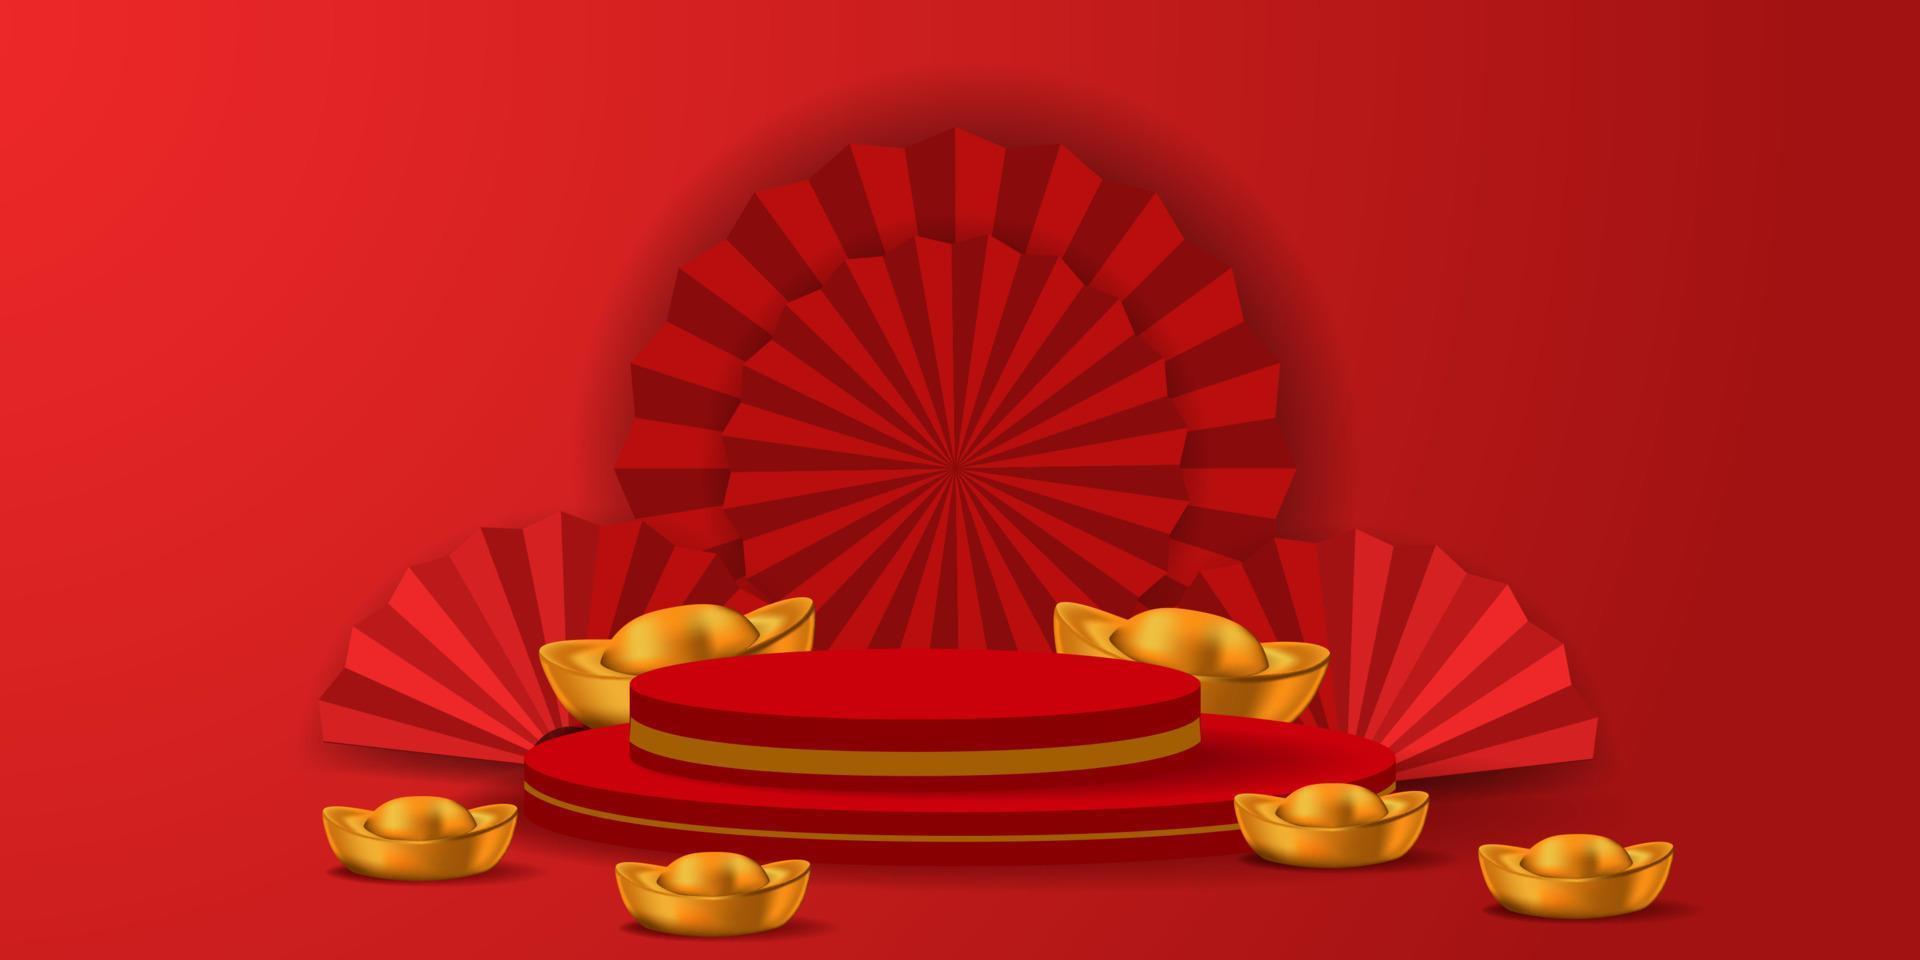 rote hängende 3D-Laterne traditionelles asiatisches Dekor. Dekorationen für das chinesische Neujahr. chinesisches laternenfestplakat, banner, grußkarte vektor